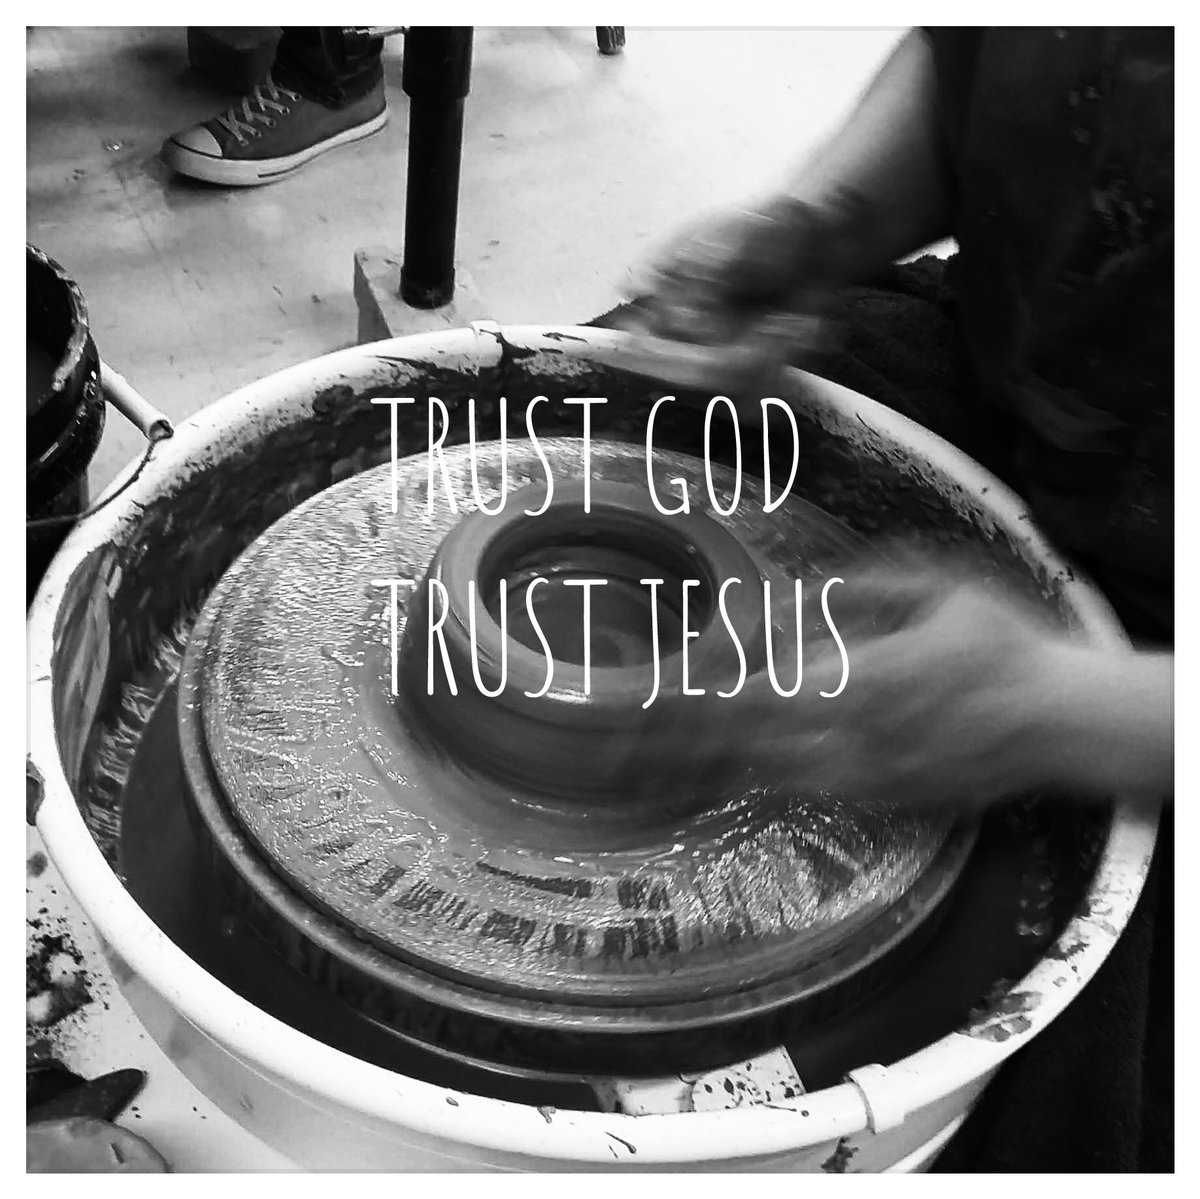 #trustGOD #trustJESUS